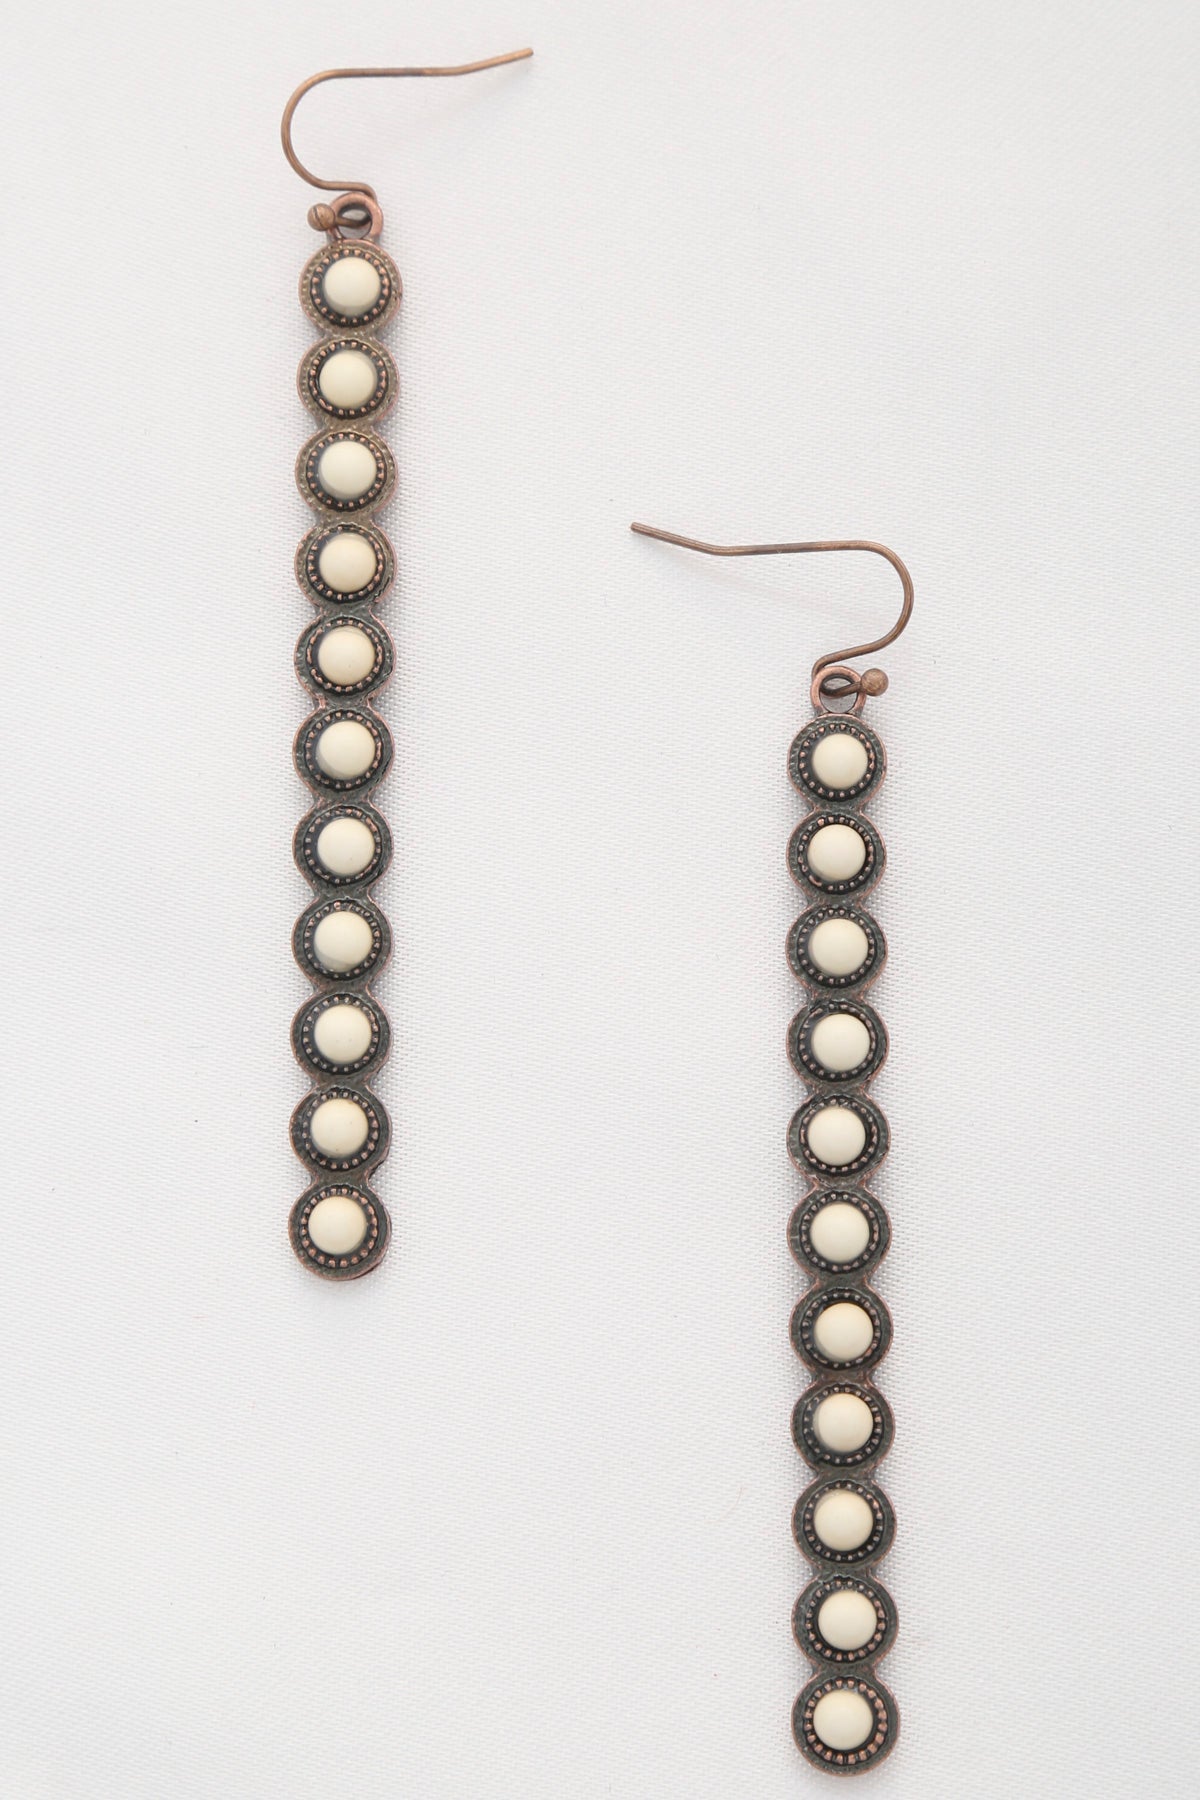 Rodeo Western Round Bead Pattern Metal Dangle Earring - Tigbul's Fashion